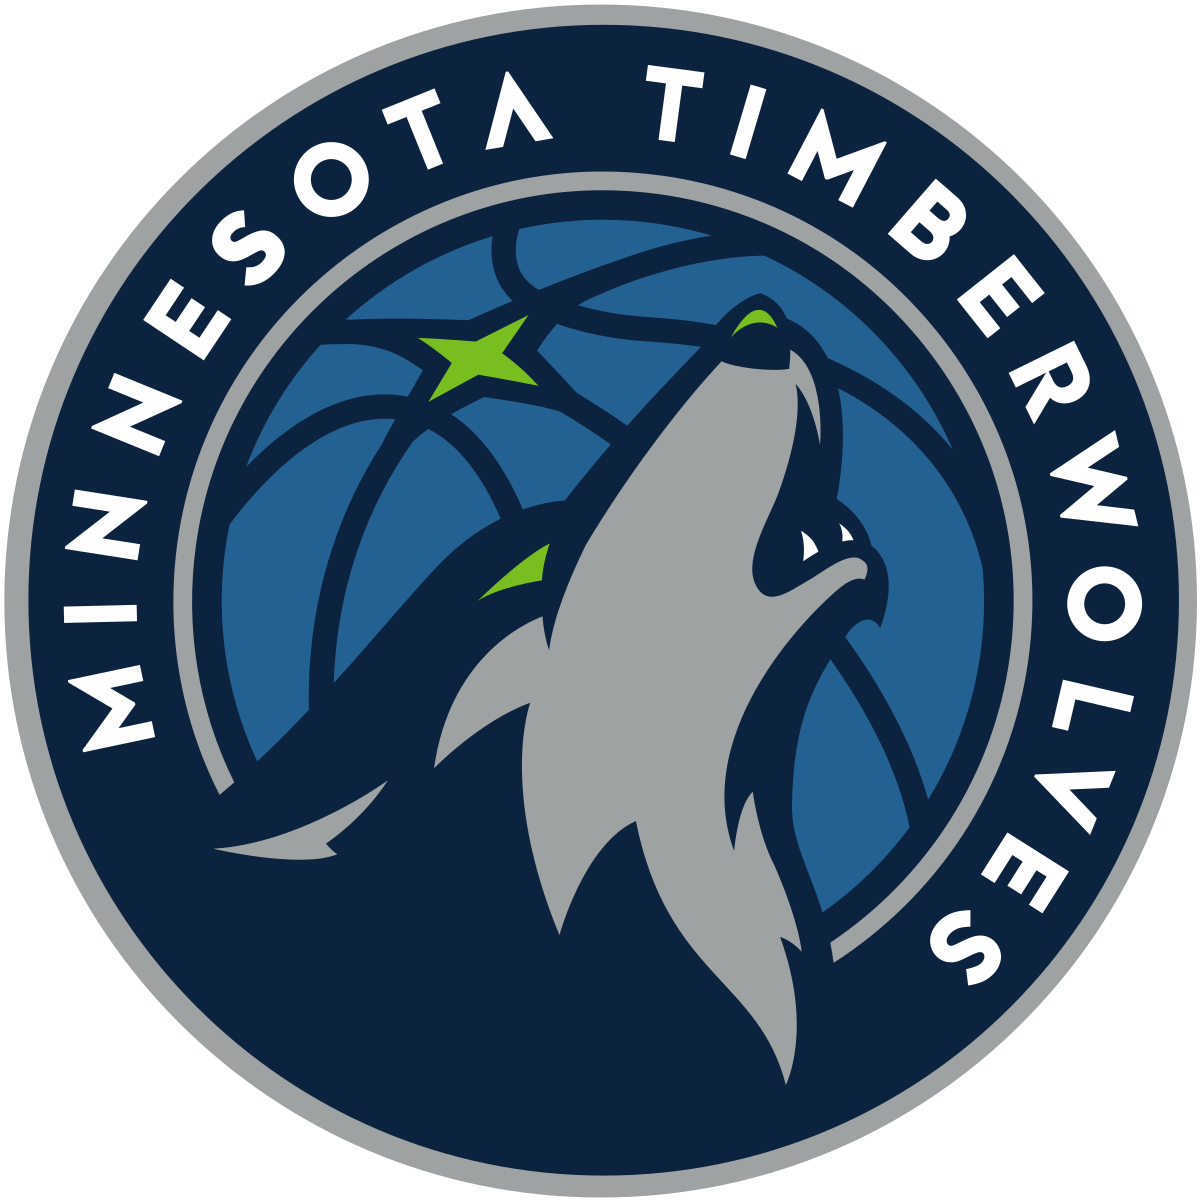 simbolo do Minnesota Timberwolves